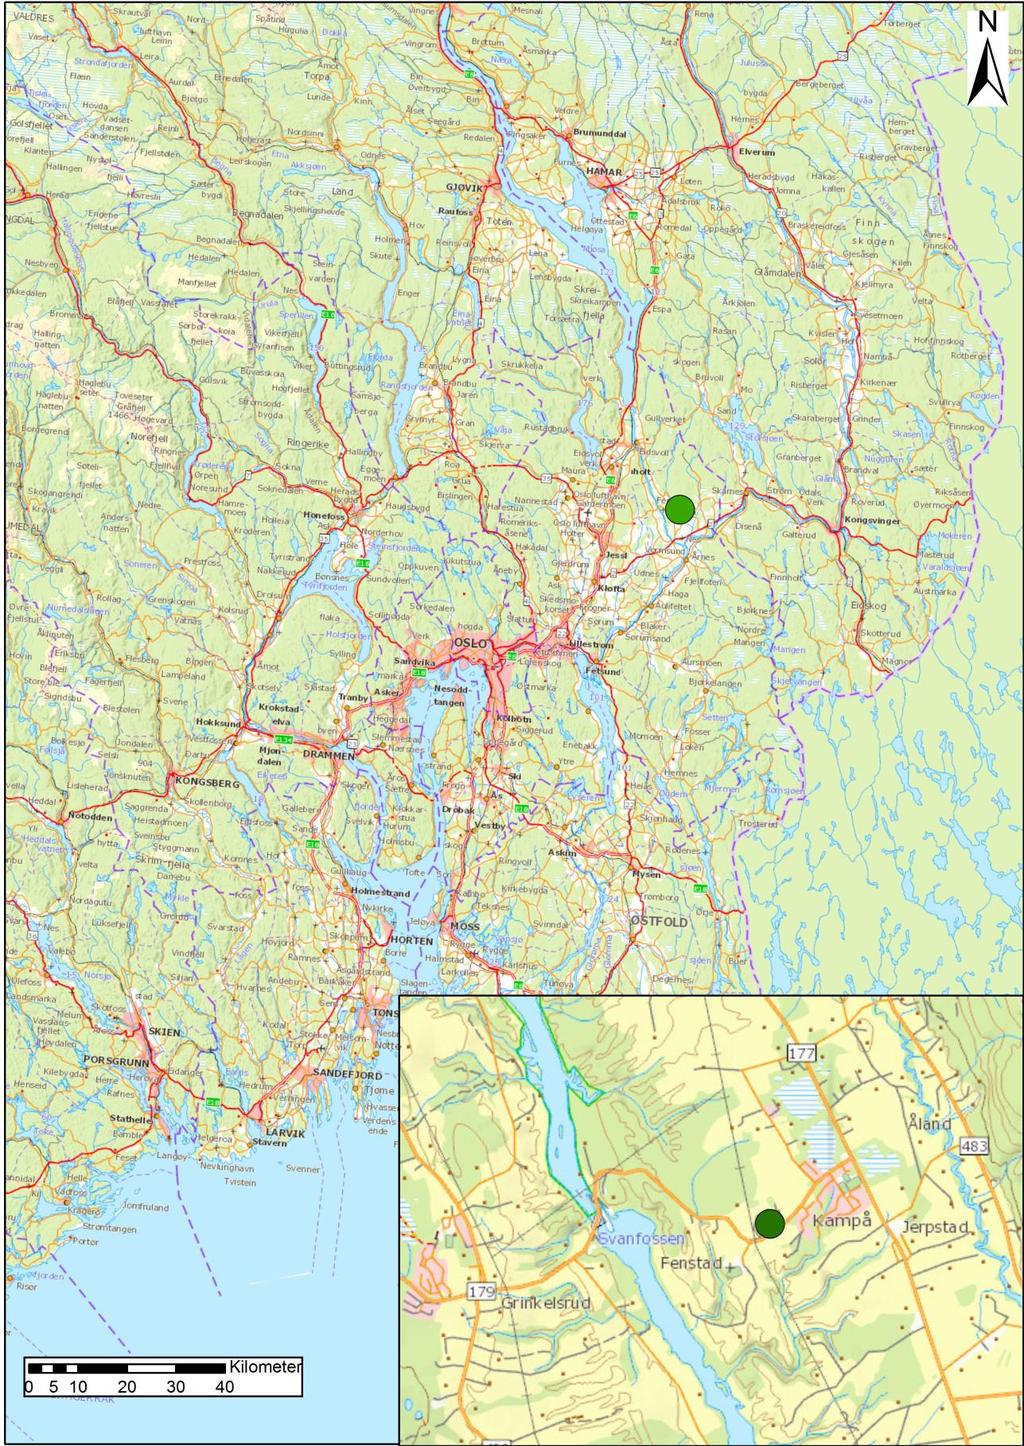 Kart 1: Kart med oversikt